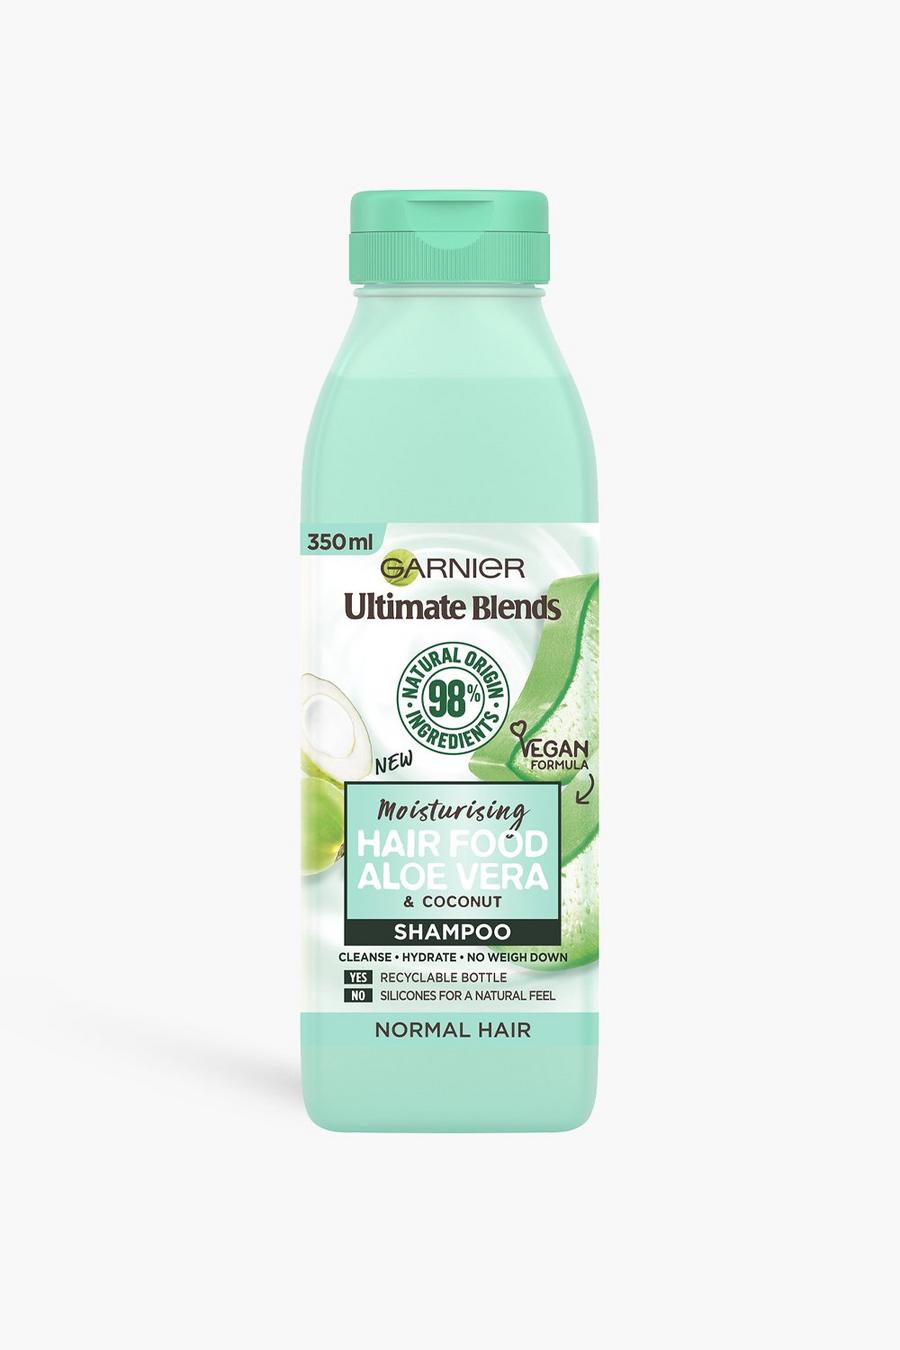 ירוק verde שמפו Ultimate Blends Aloe Vera Shampoo של Garnier